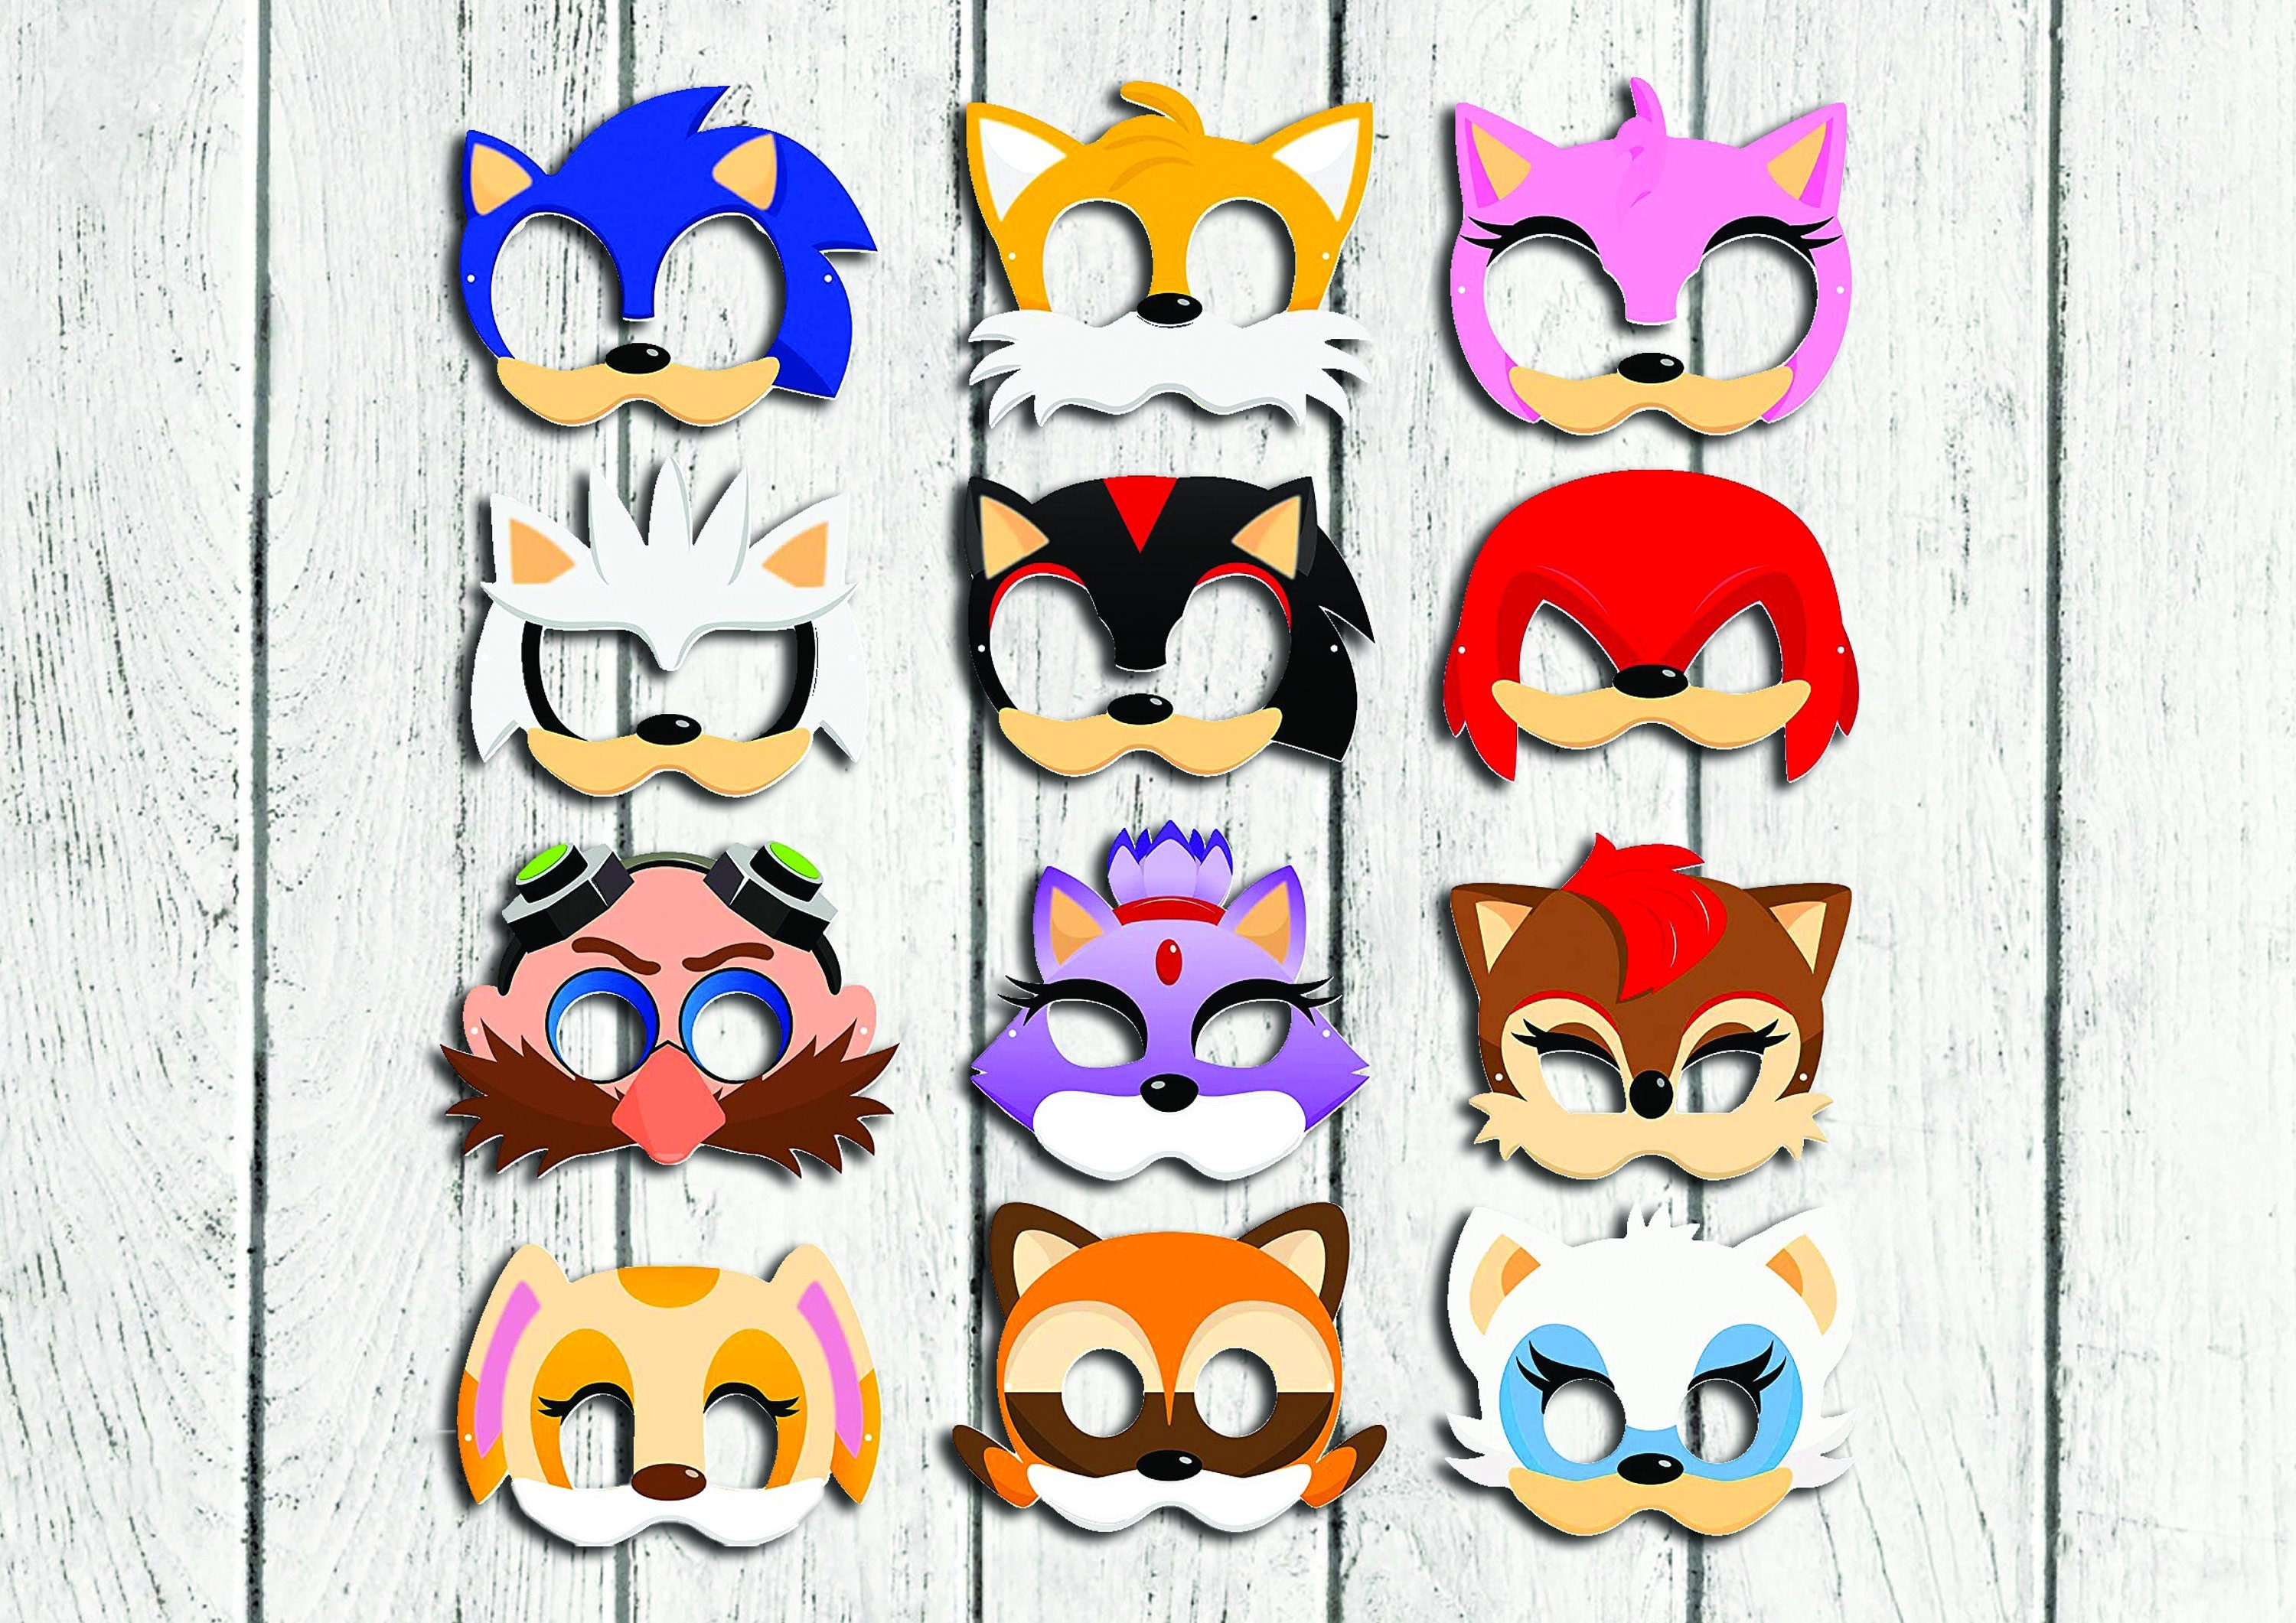 Costume Sonic The Hedgehog de SEGA pour enfants【Achat en ligne】